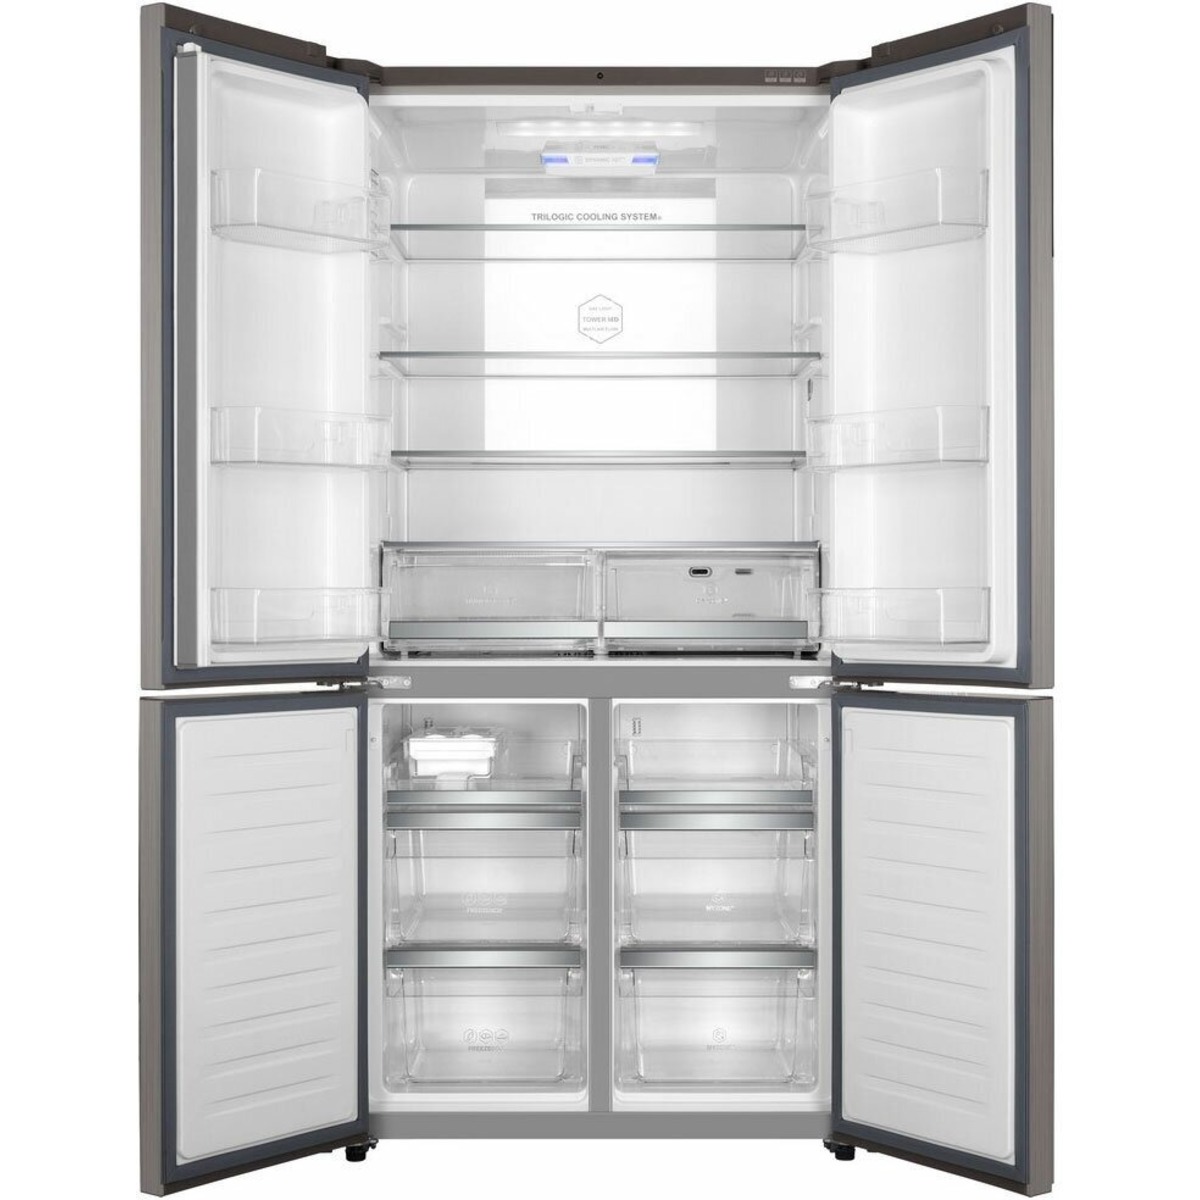 Холодильник Haier HTF-610DM7RU (Цвет: Silver)